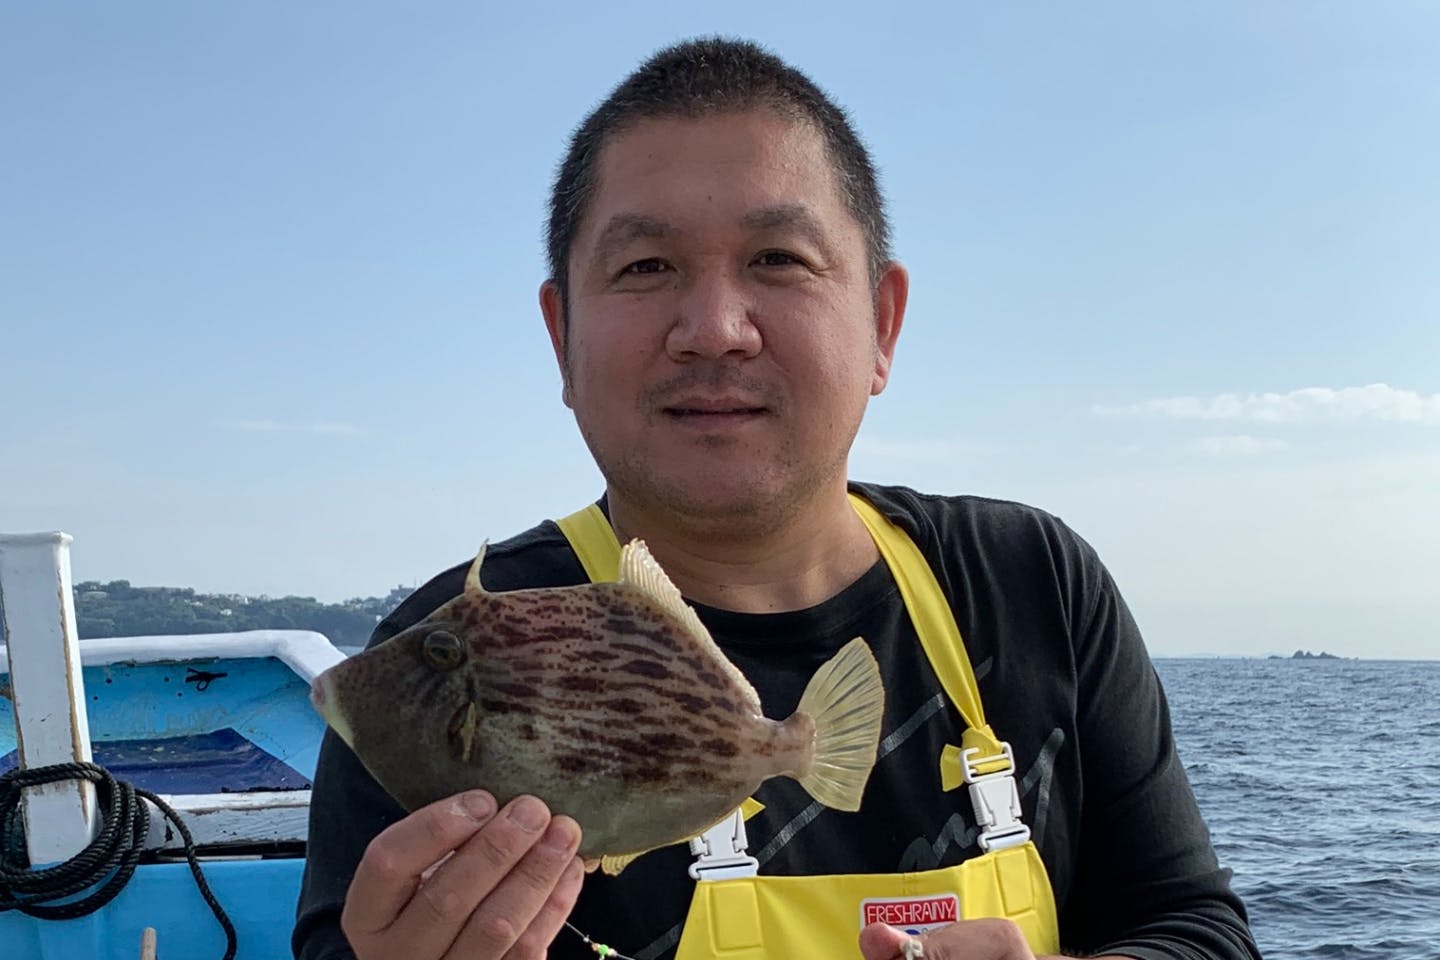 静岡 熱海 釣り体験 熱海沖でカワハギ カサゴ身餌プラン 初心者向け アソビュー